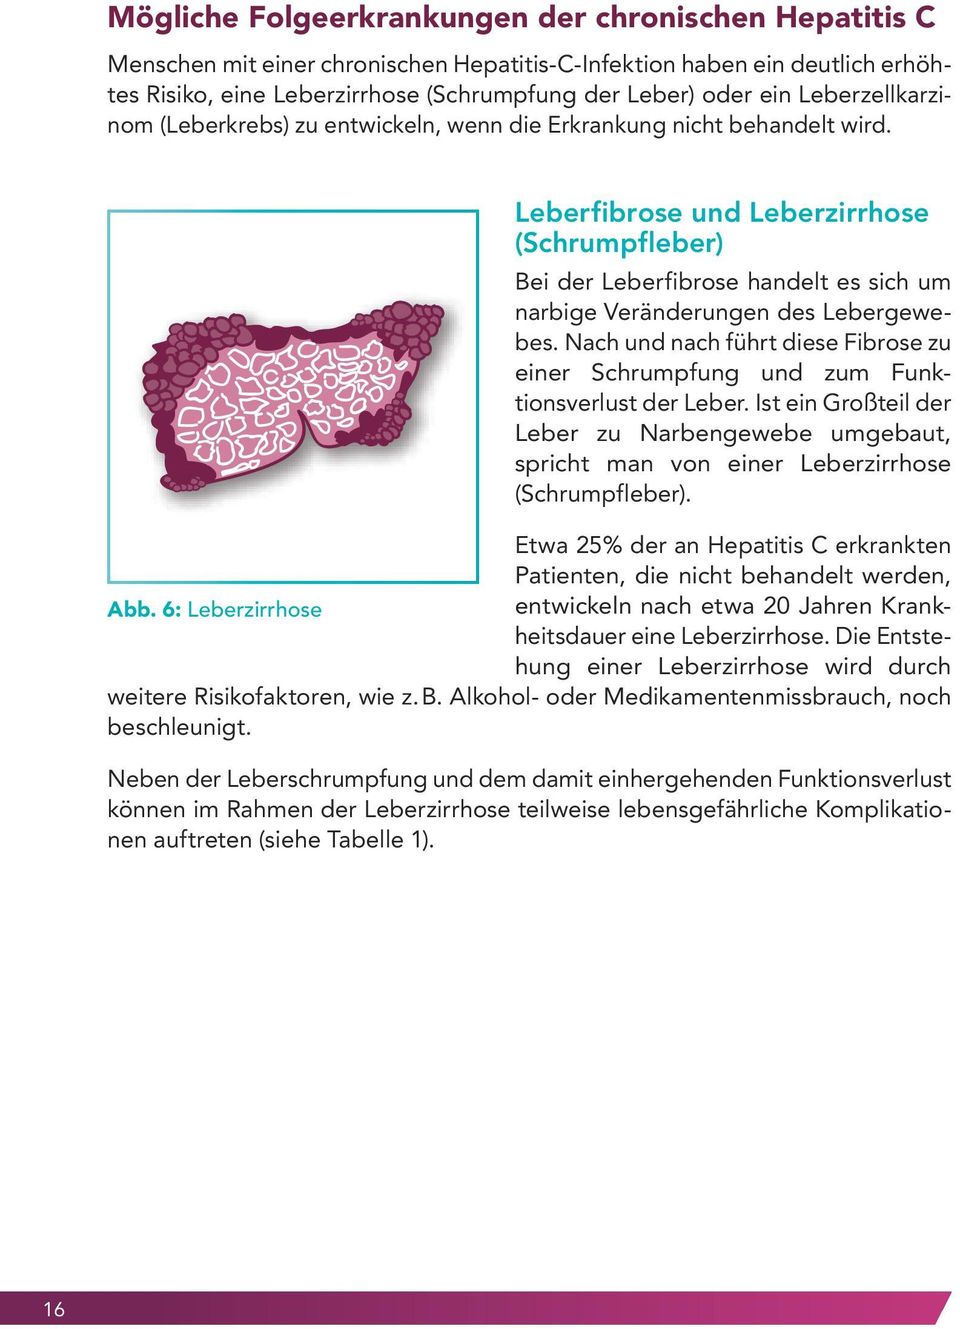 Leberfibrose und Leberzirrhose (Schrumpfleber) Bei der Leberfibrose handelt es sich um narbige Veränderungen des Lebergewebes.